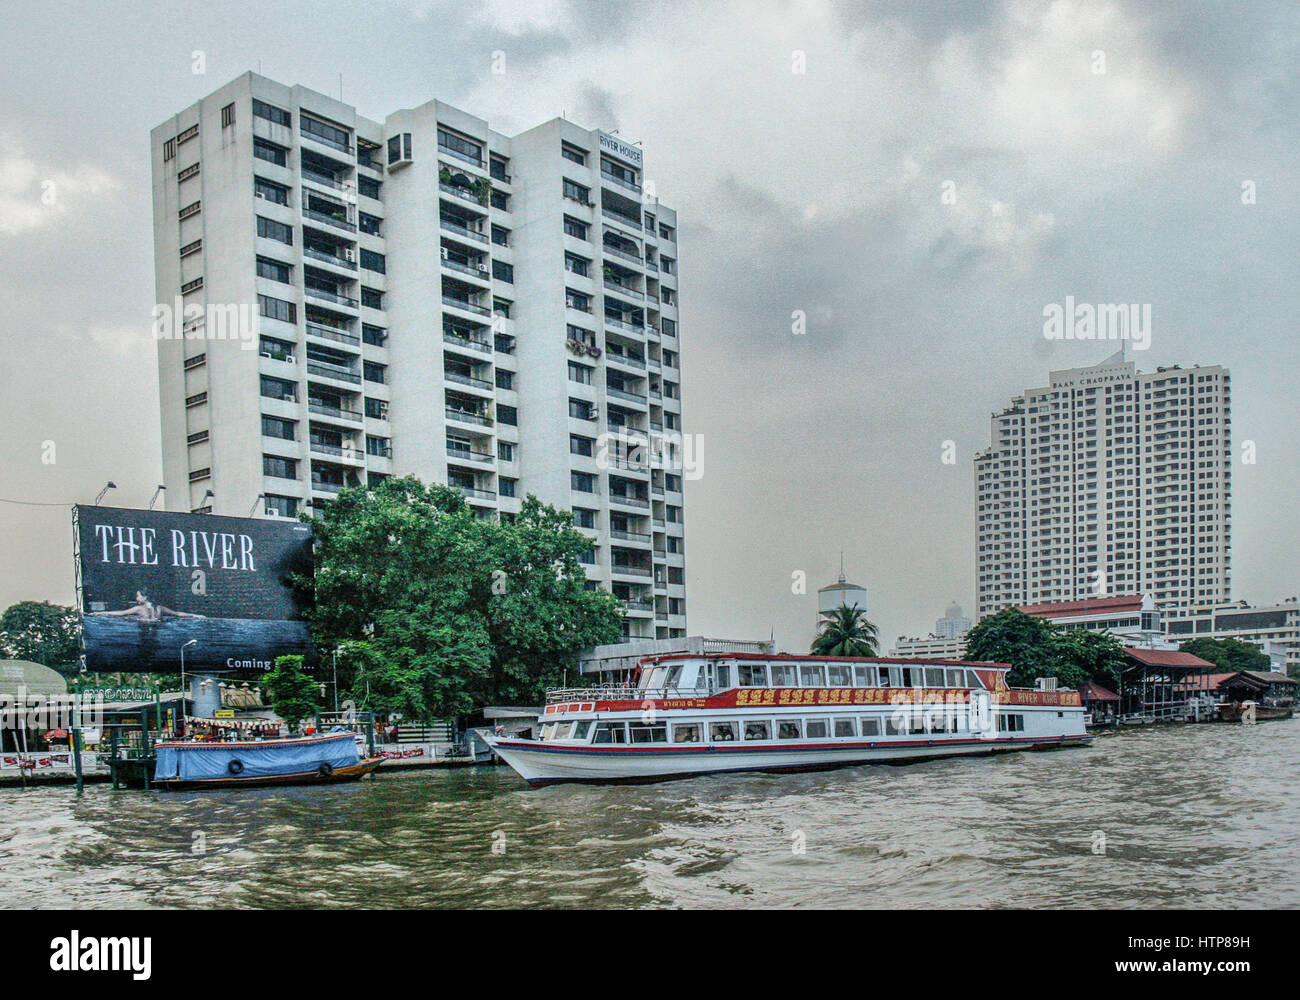 Bangkok, Thailand. 15. November 2006. Das touristische Ausflugsschiff River King am Fluss Chao Phraya, dem legendären Fluss der Könige, der durch Bangkok fließt. Thailand ist ein beliebtes Touristenziel Credit geworden: Arnold Drapkin/ZUMA Draht/Alamy Live News Stockfoto